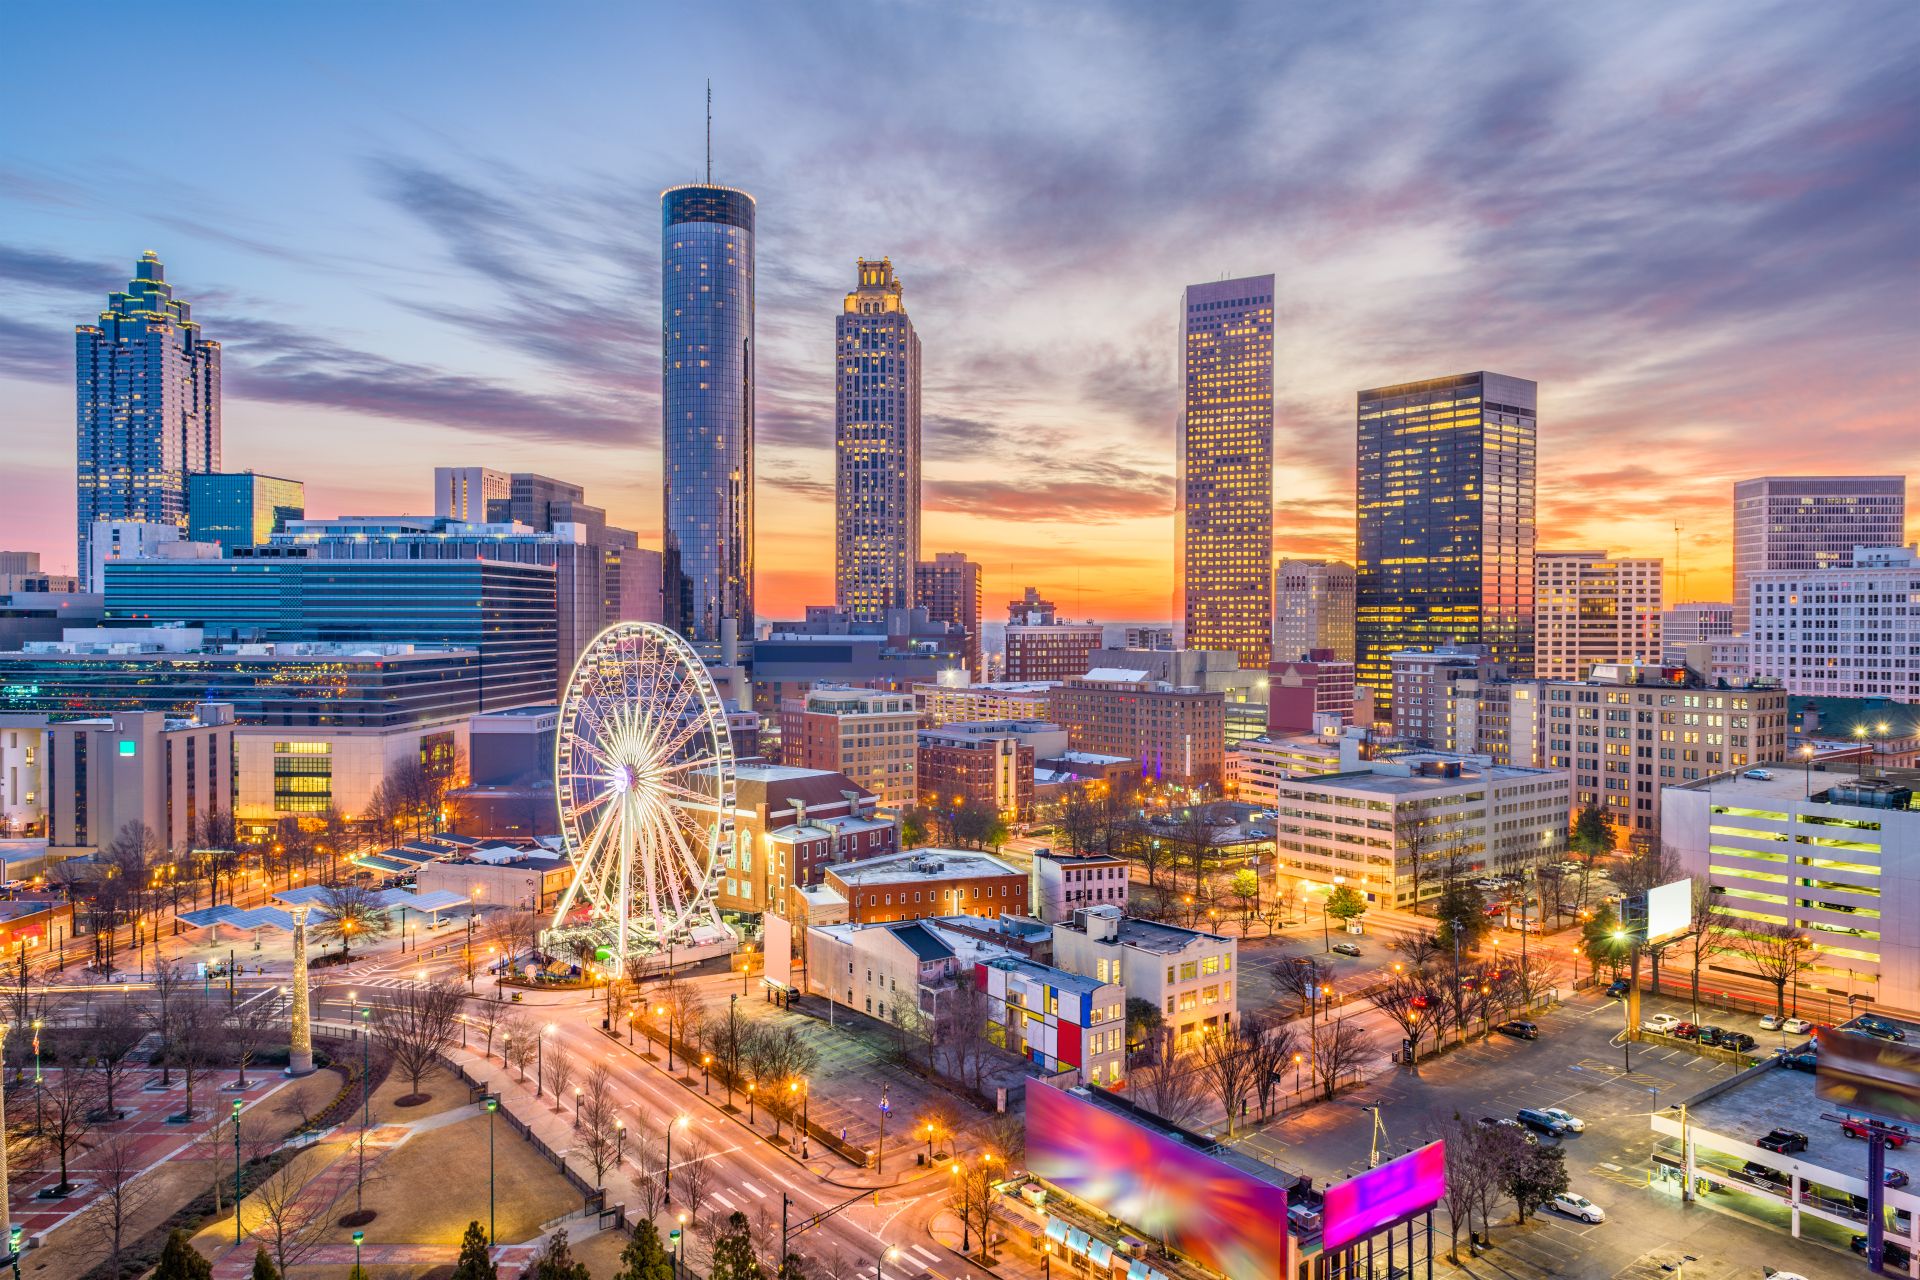 Aerial view of the city of Atlanta, Georgia, USA